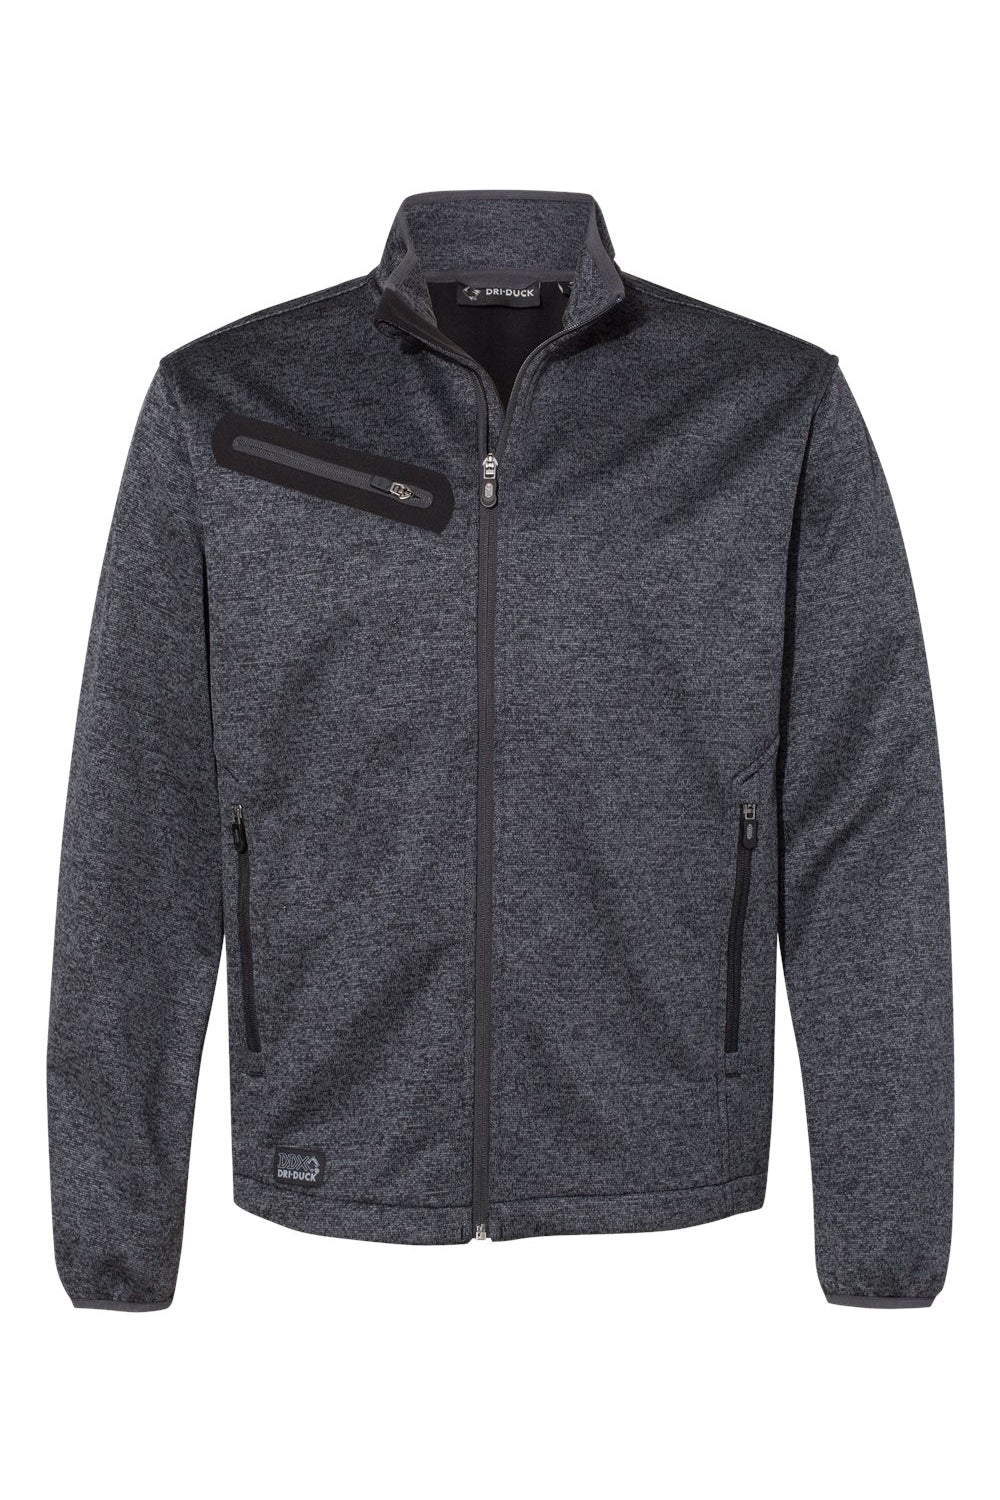 Dri Duck 5316 Mens Atlas Sweater Fleece Full Zip Jacket Charcoal Grey Flat Front